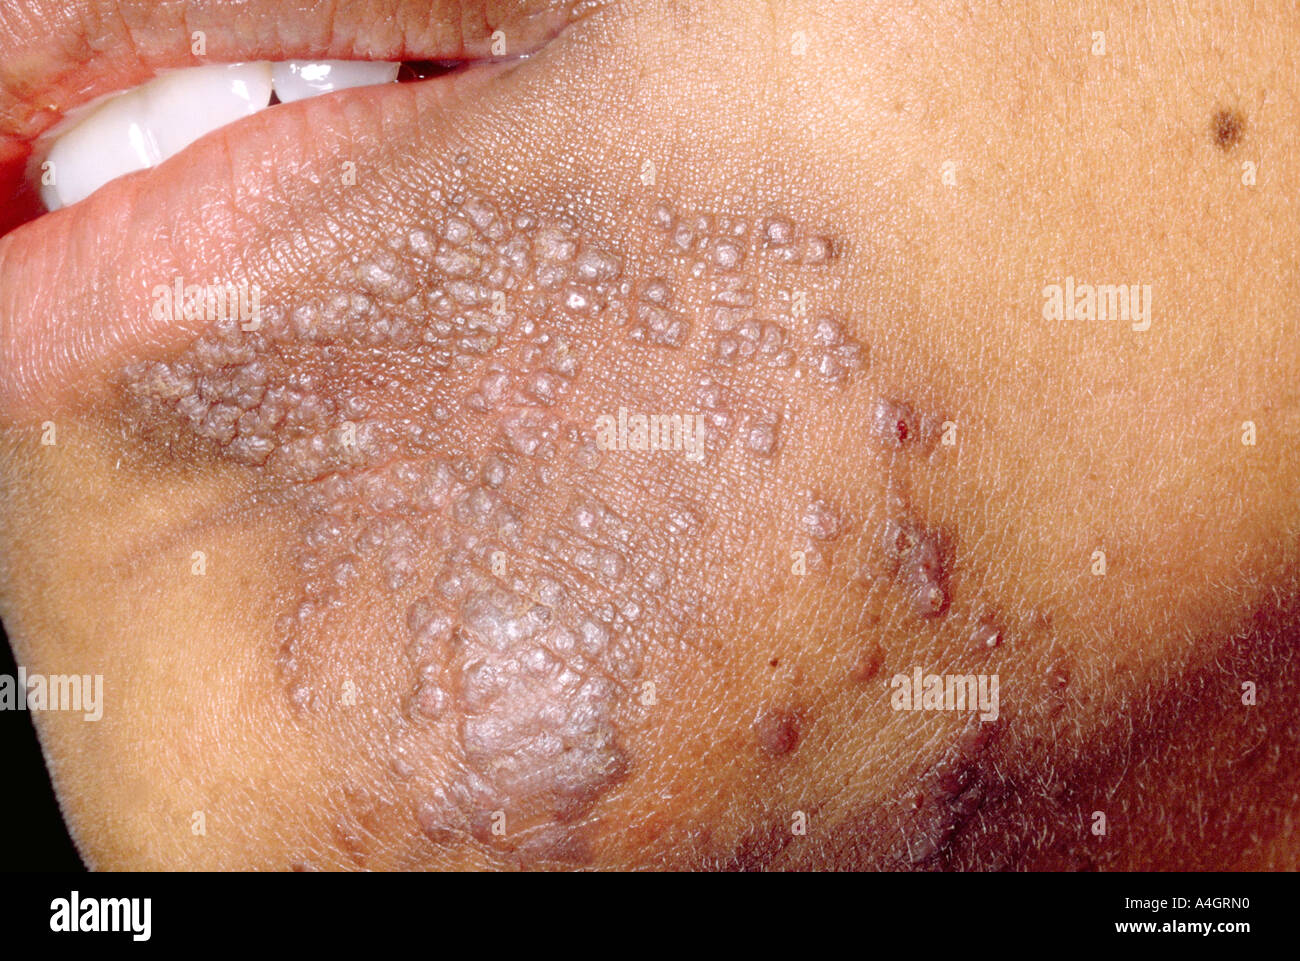 Verruga plana es un pequeño, de color carne, plana rematada lesión que ocurre comúnmente en la cara, cuello, dorso de las manos Foto de stock